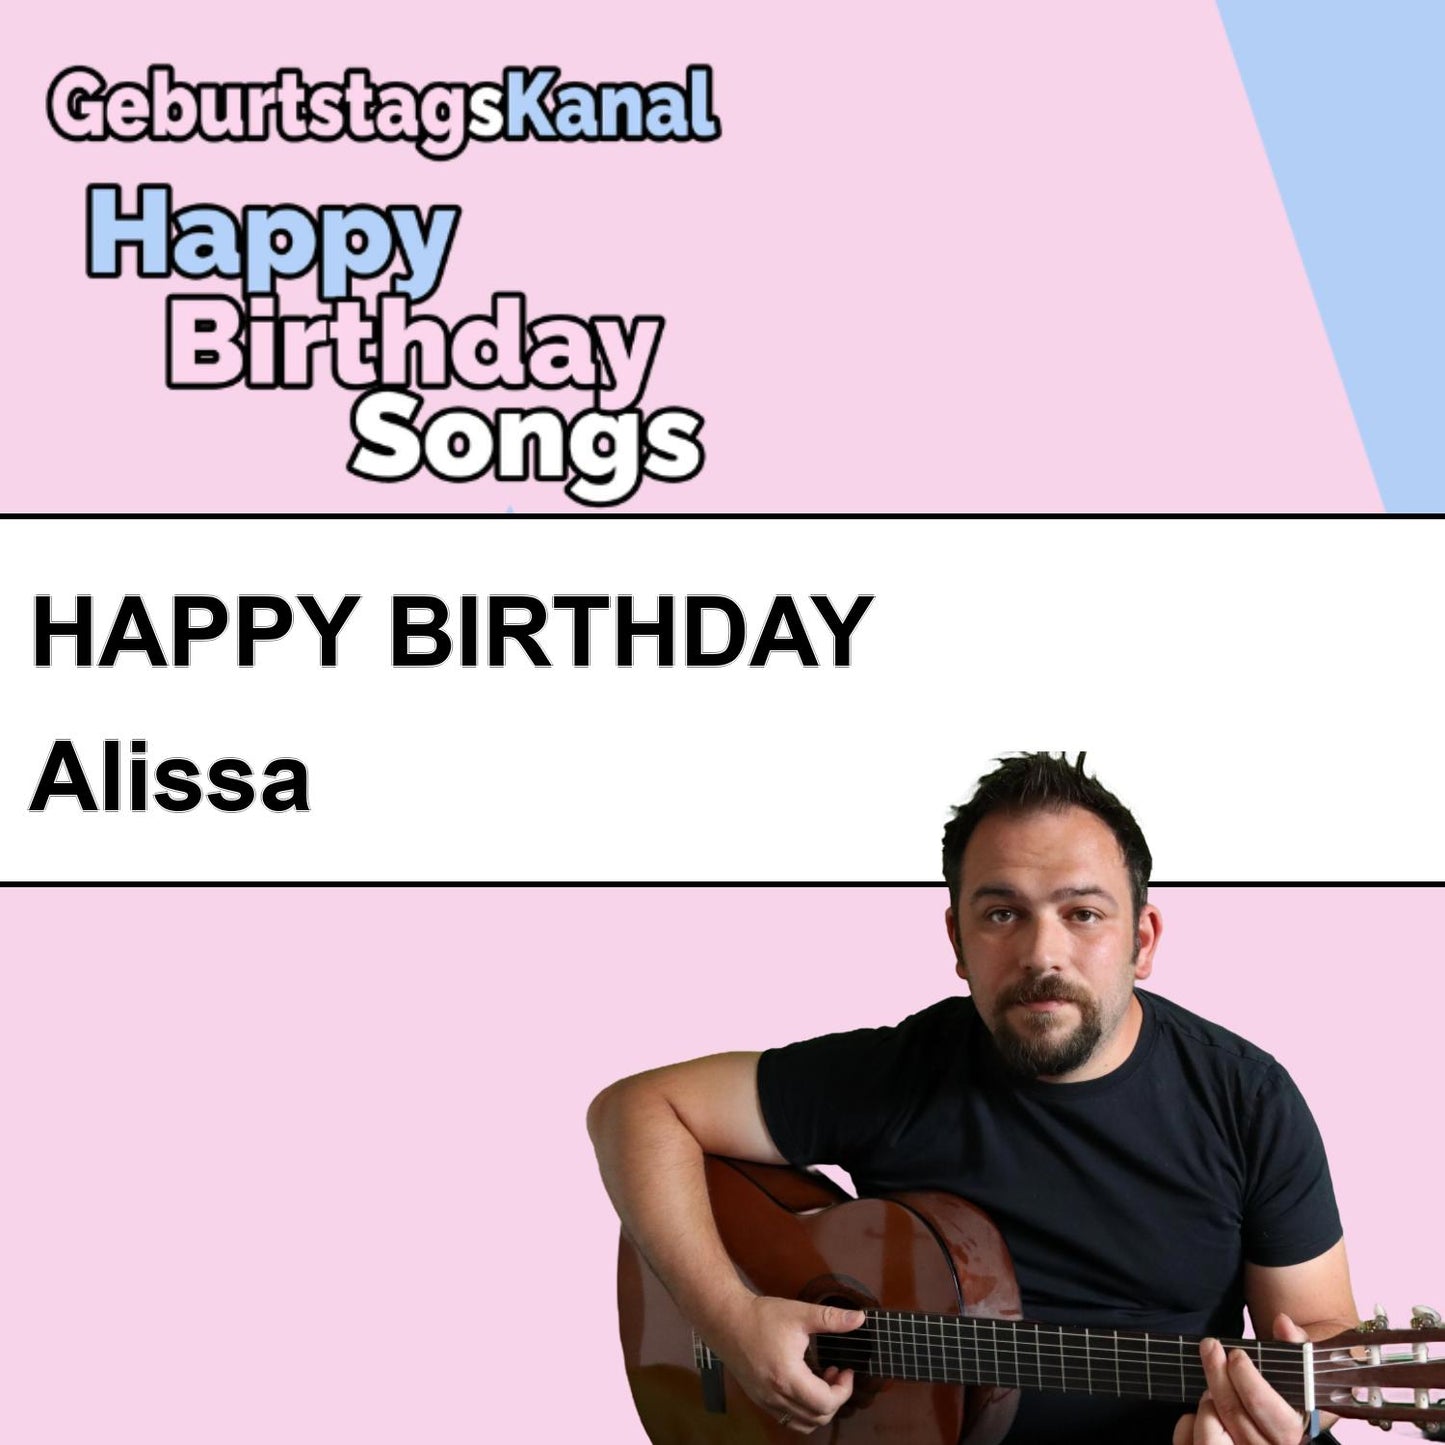 Produktbild Happy Birthday to you Alissa mit Wunschgrußbotschaft